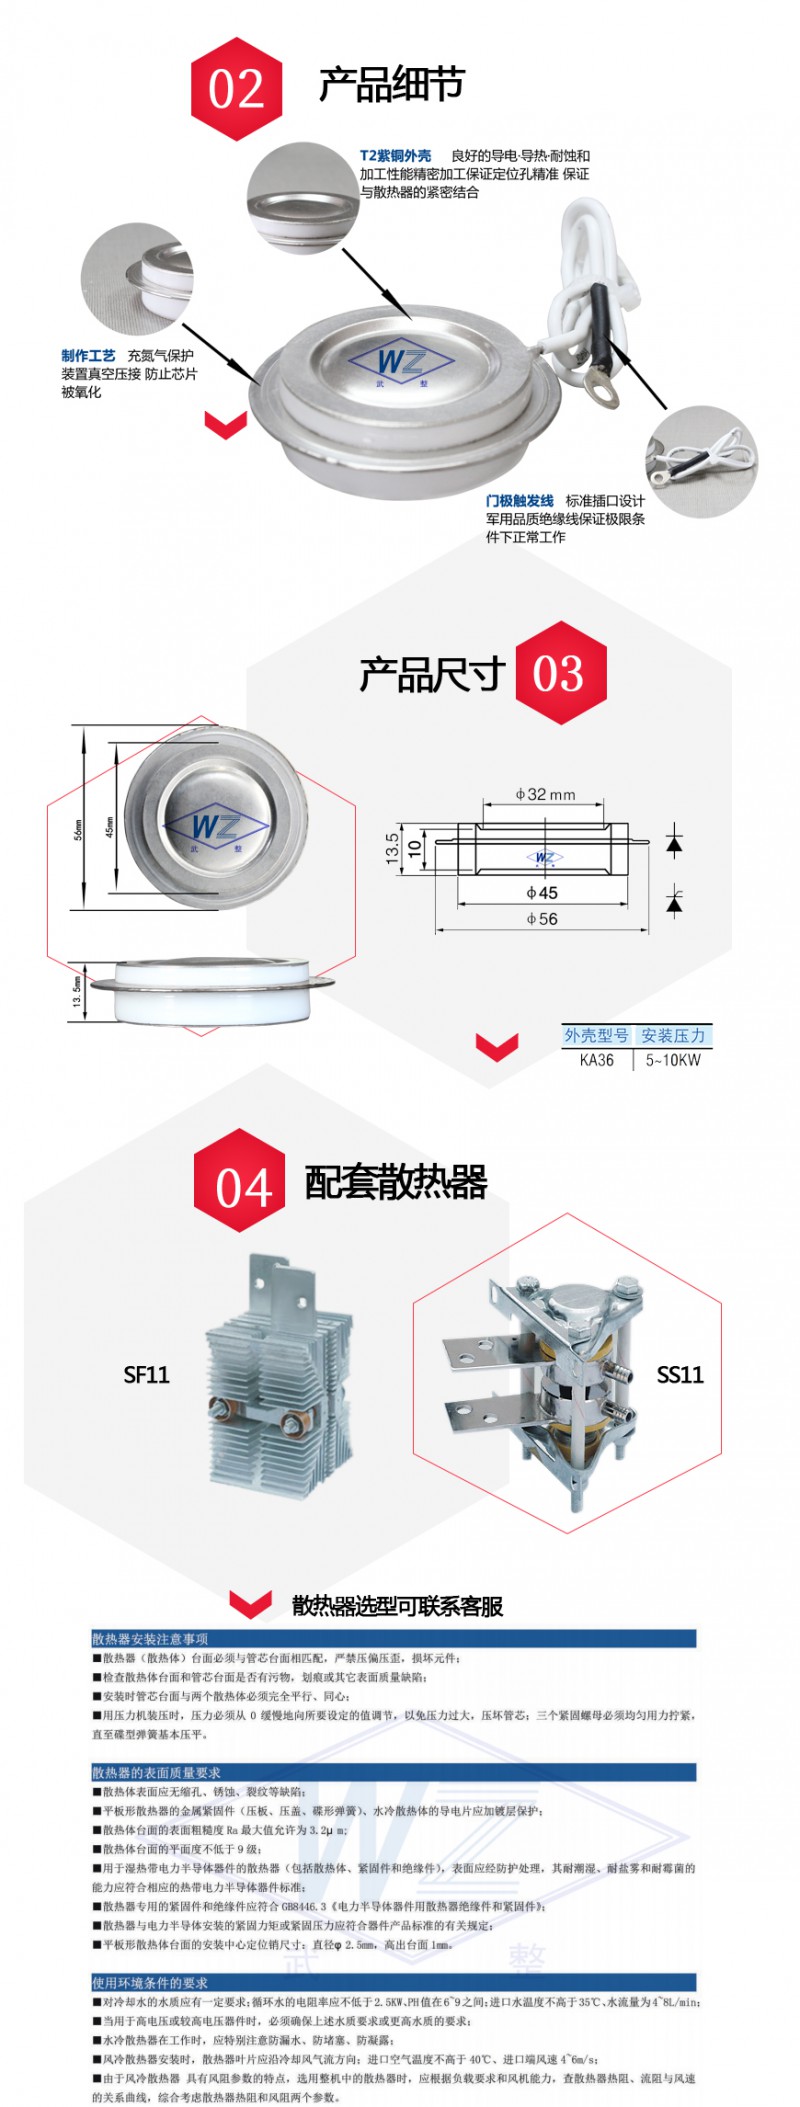 KA36产品尺寸及散热器